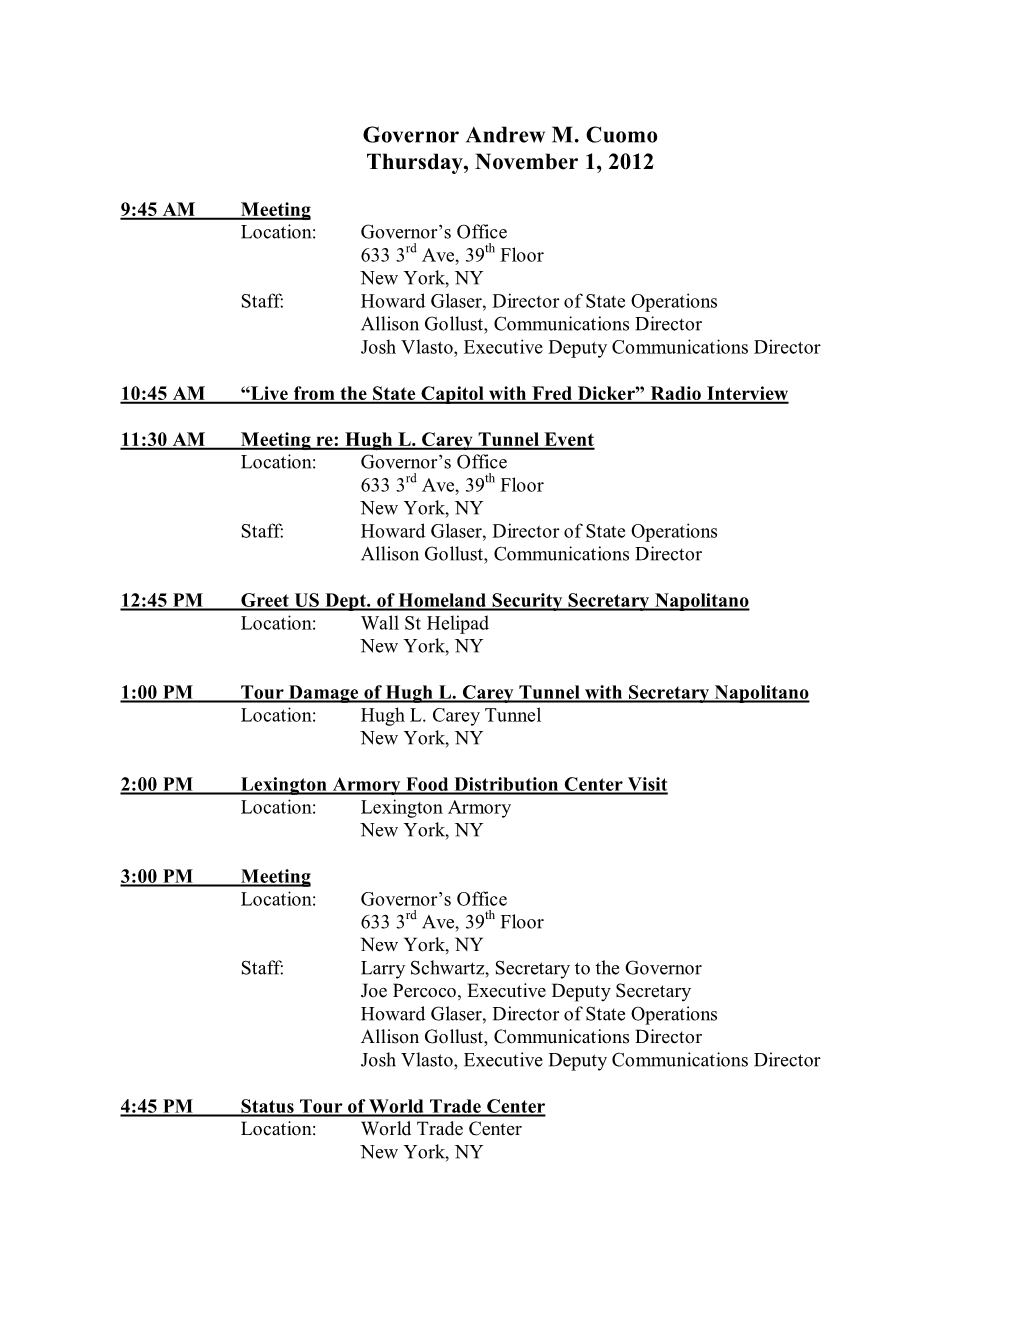 Governor Andrew M. Cuomo Thursday, November 1, 2012